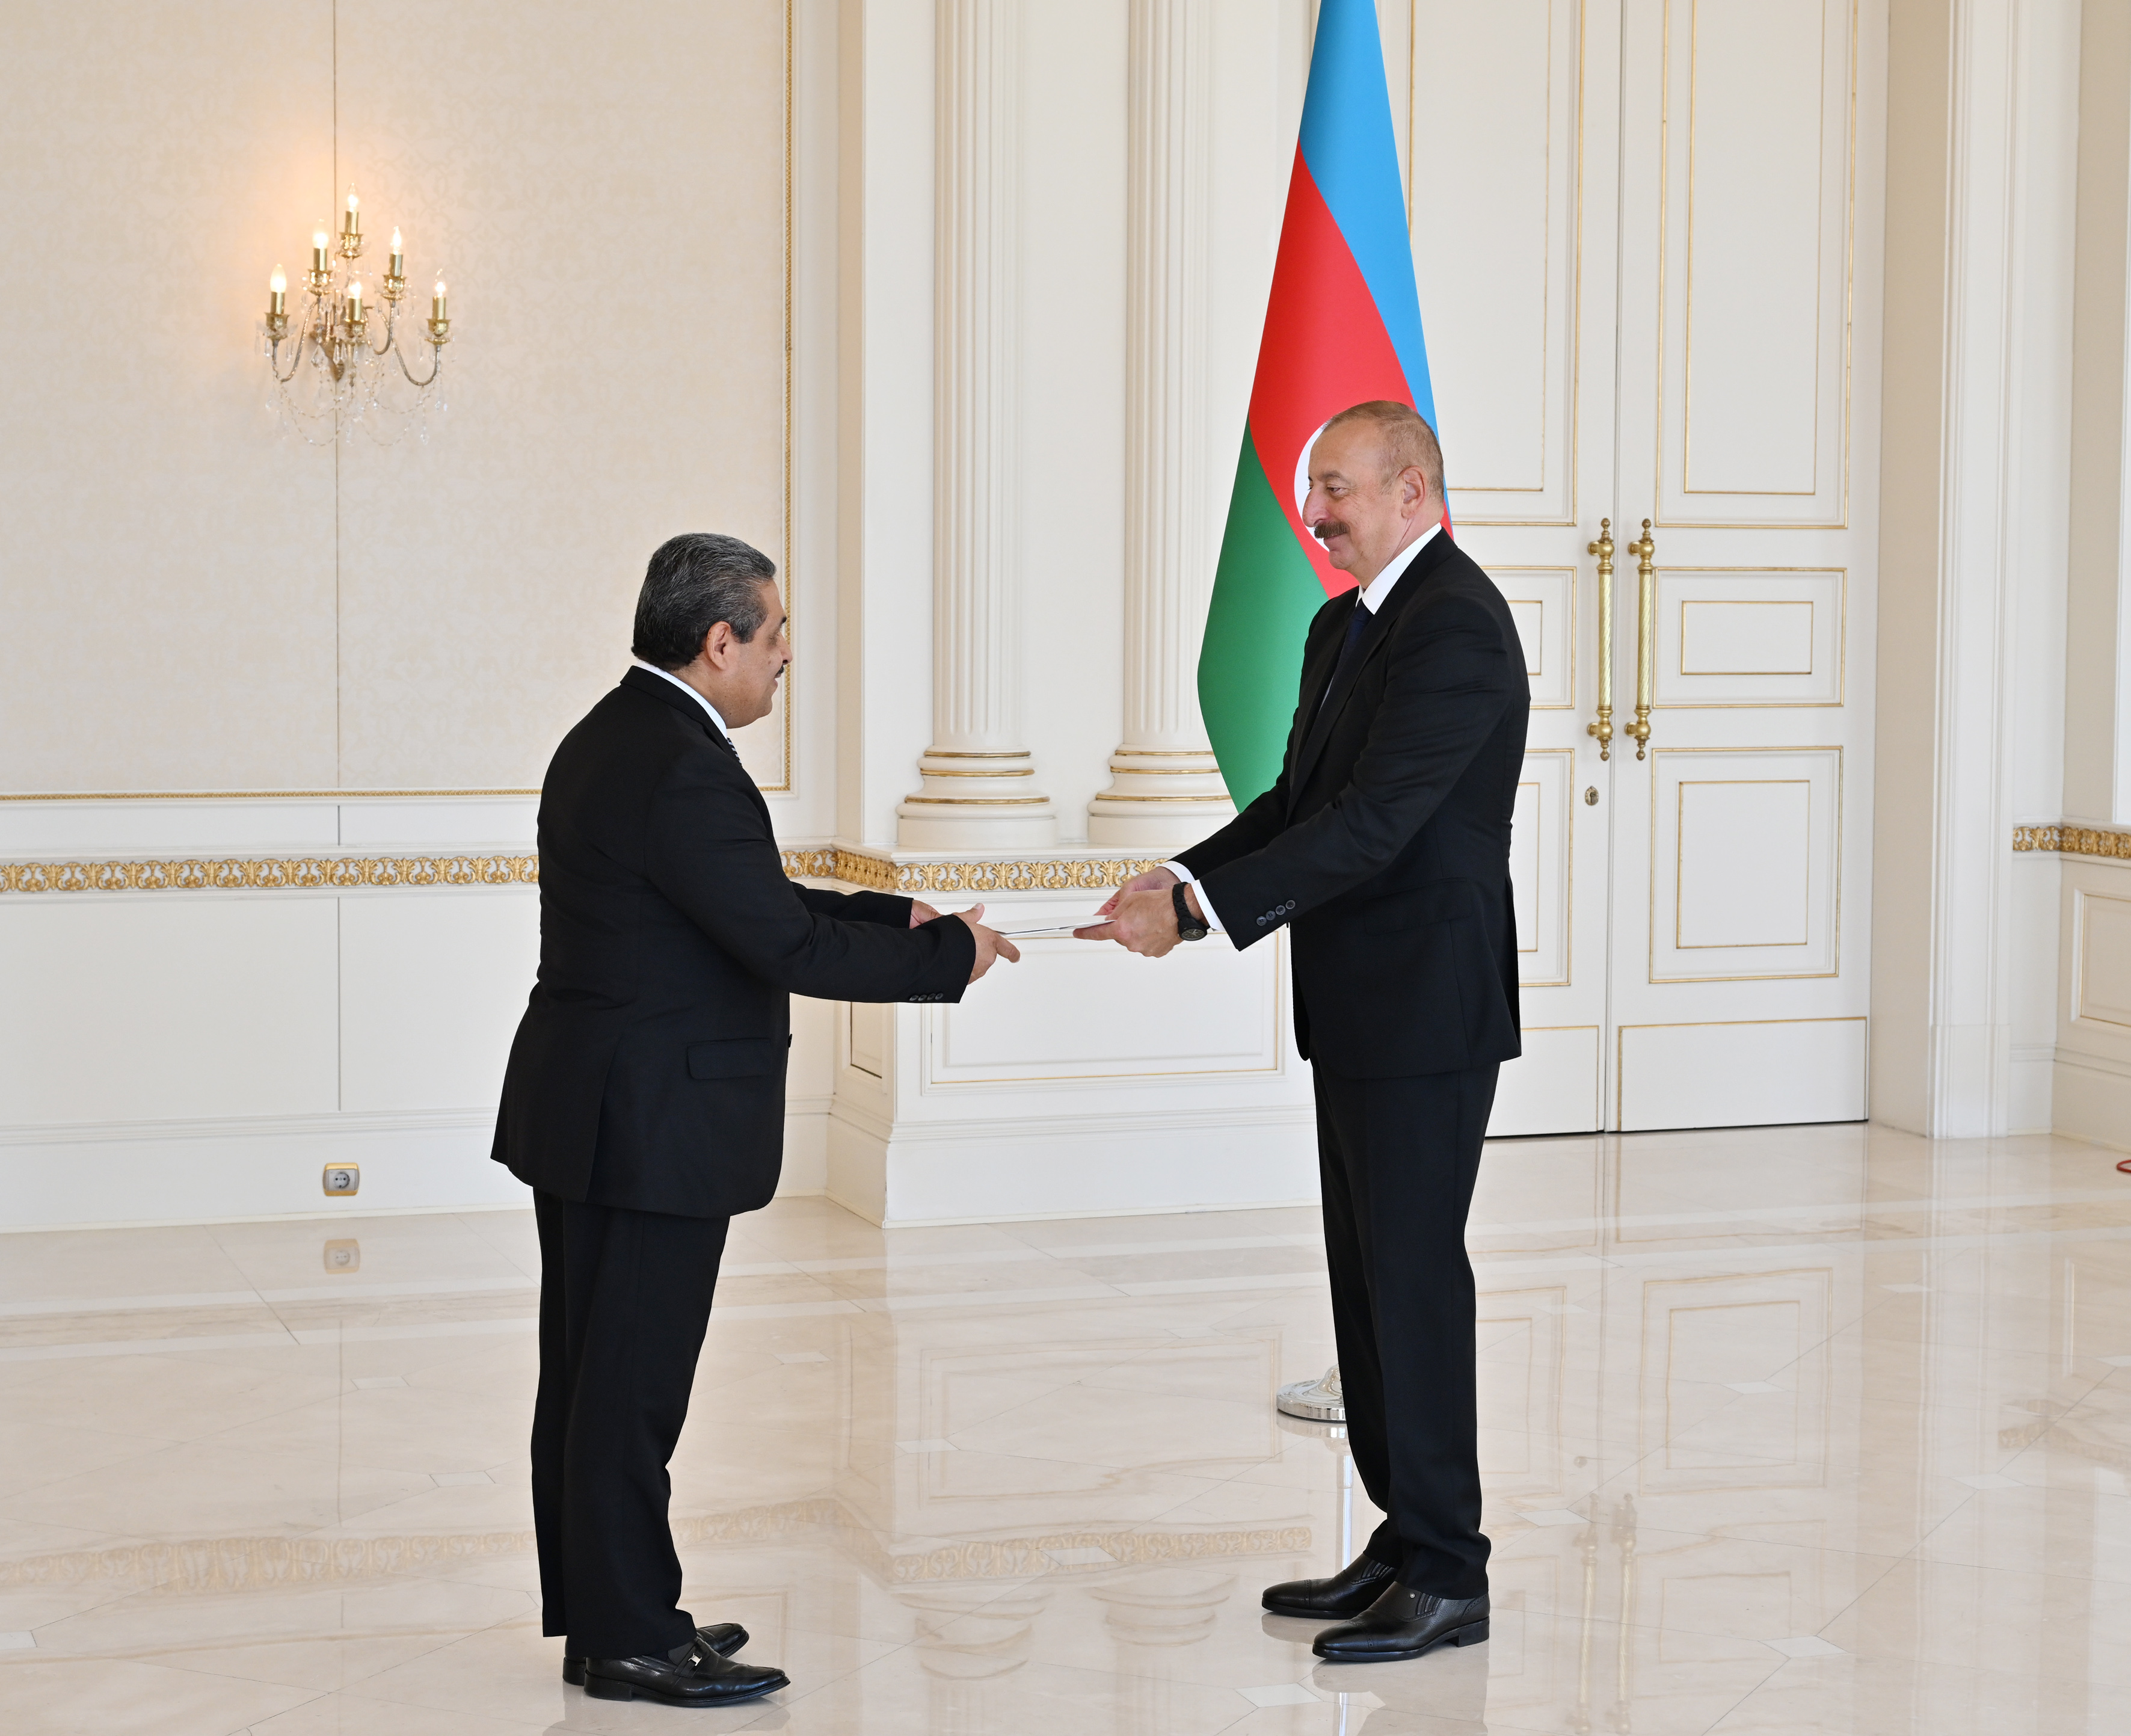 El embajador Luis Fernando Cuartas Ayala presentó sus cartas credenciales al presidente de la República de Azerbaiyán